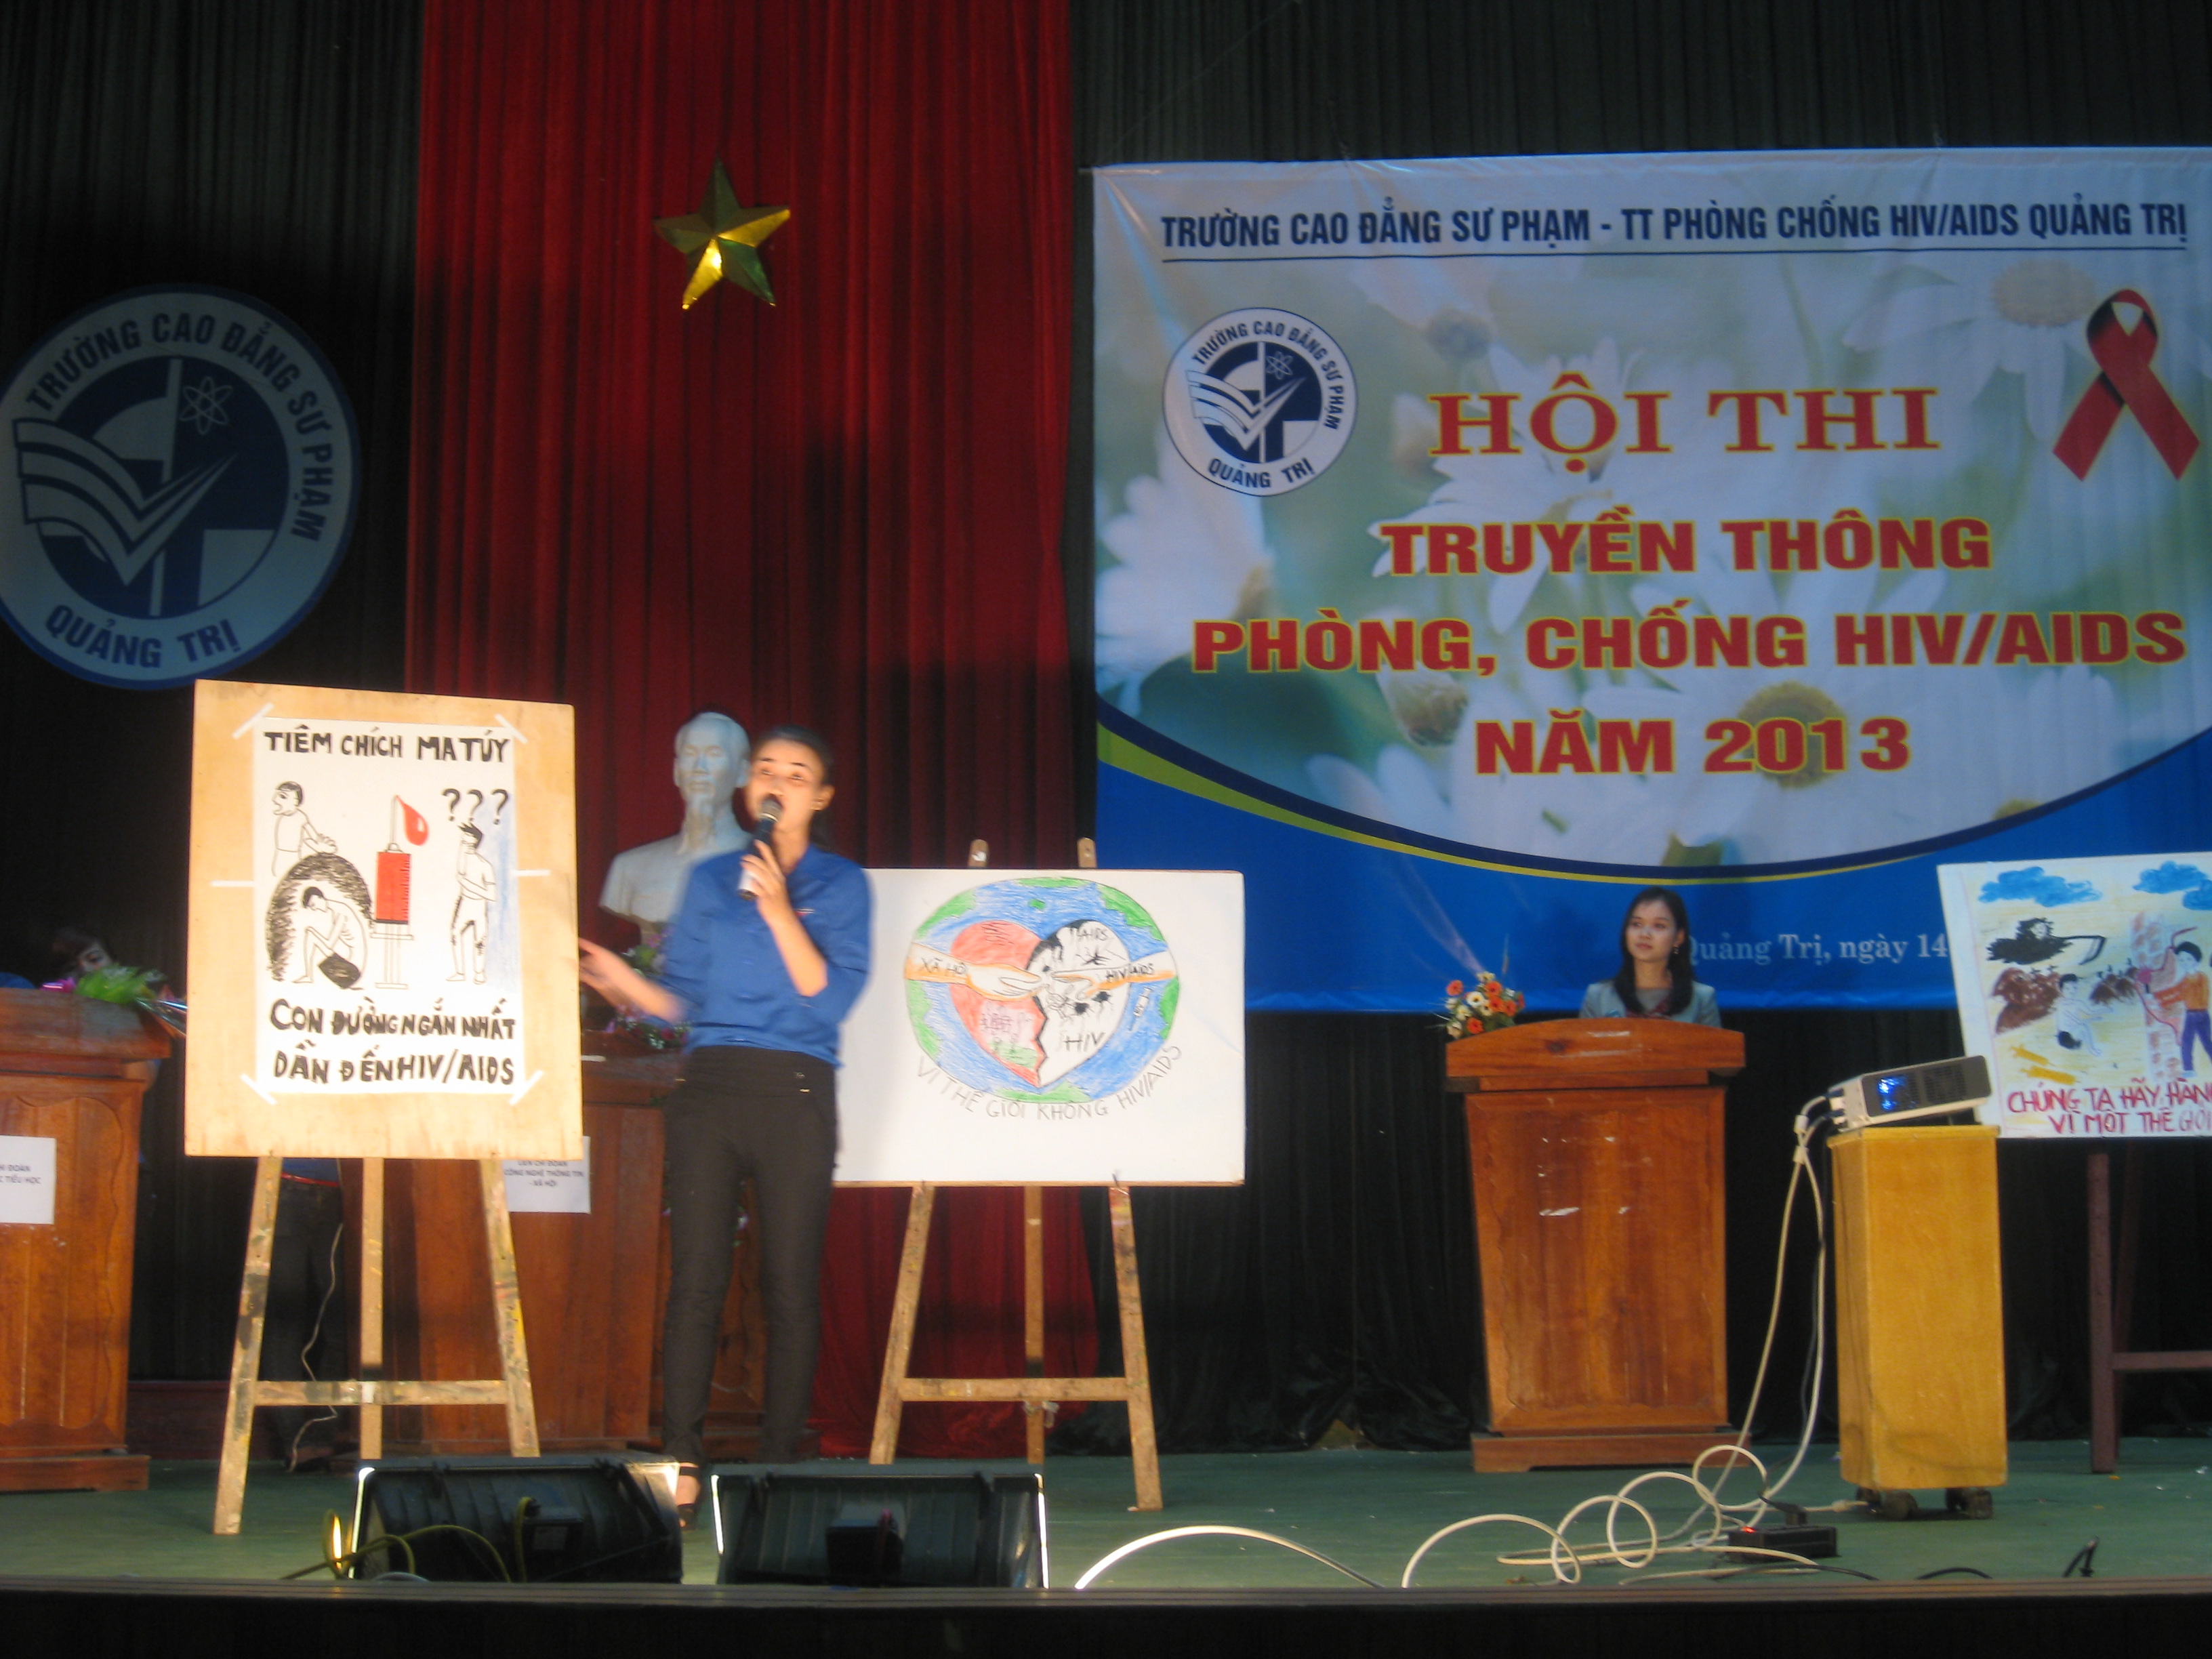 Đoàn trường: Tổ chức Hội thi phòng, chống HIV/AIDS trong HSSV năm 2013